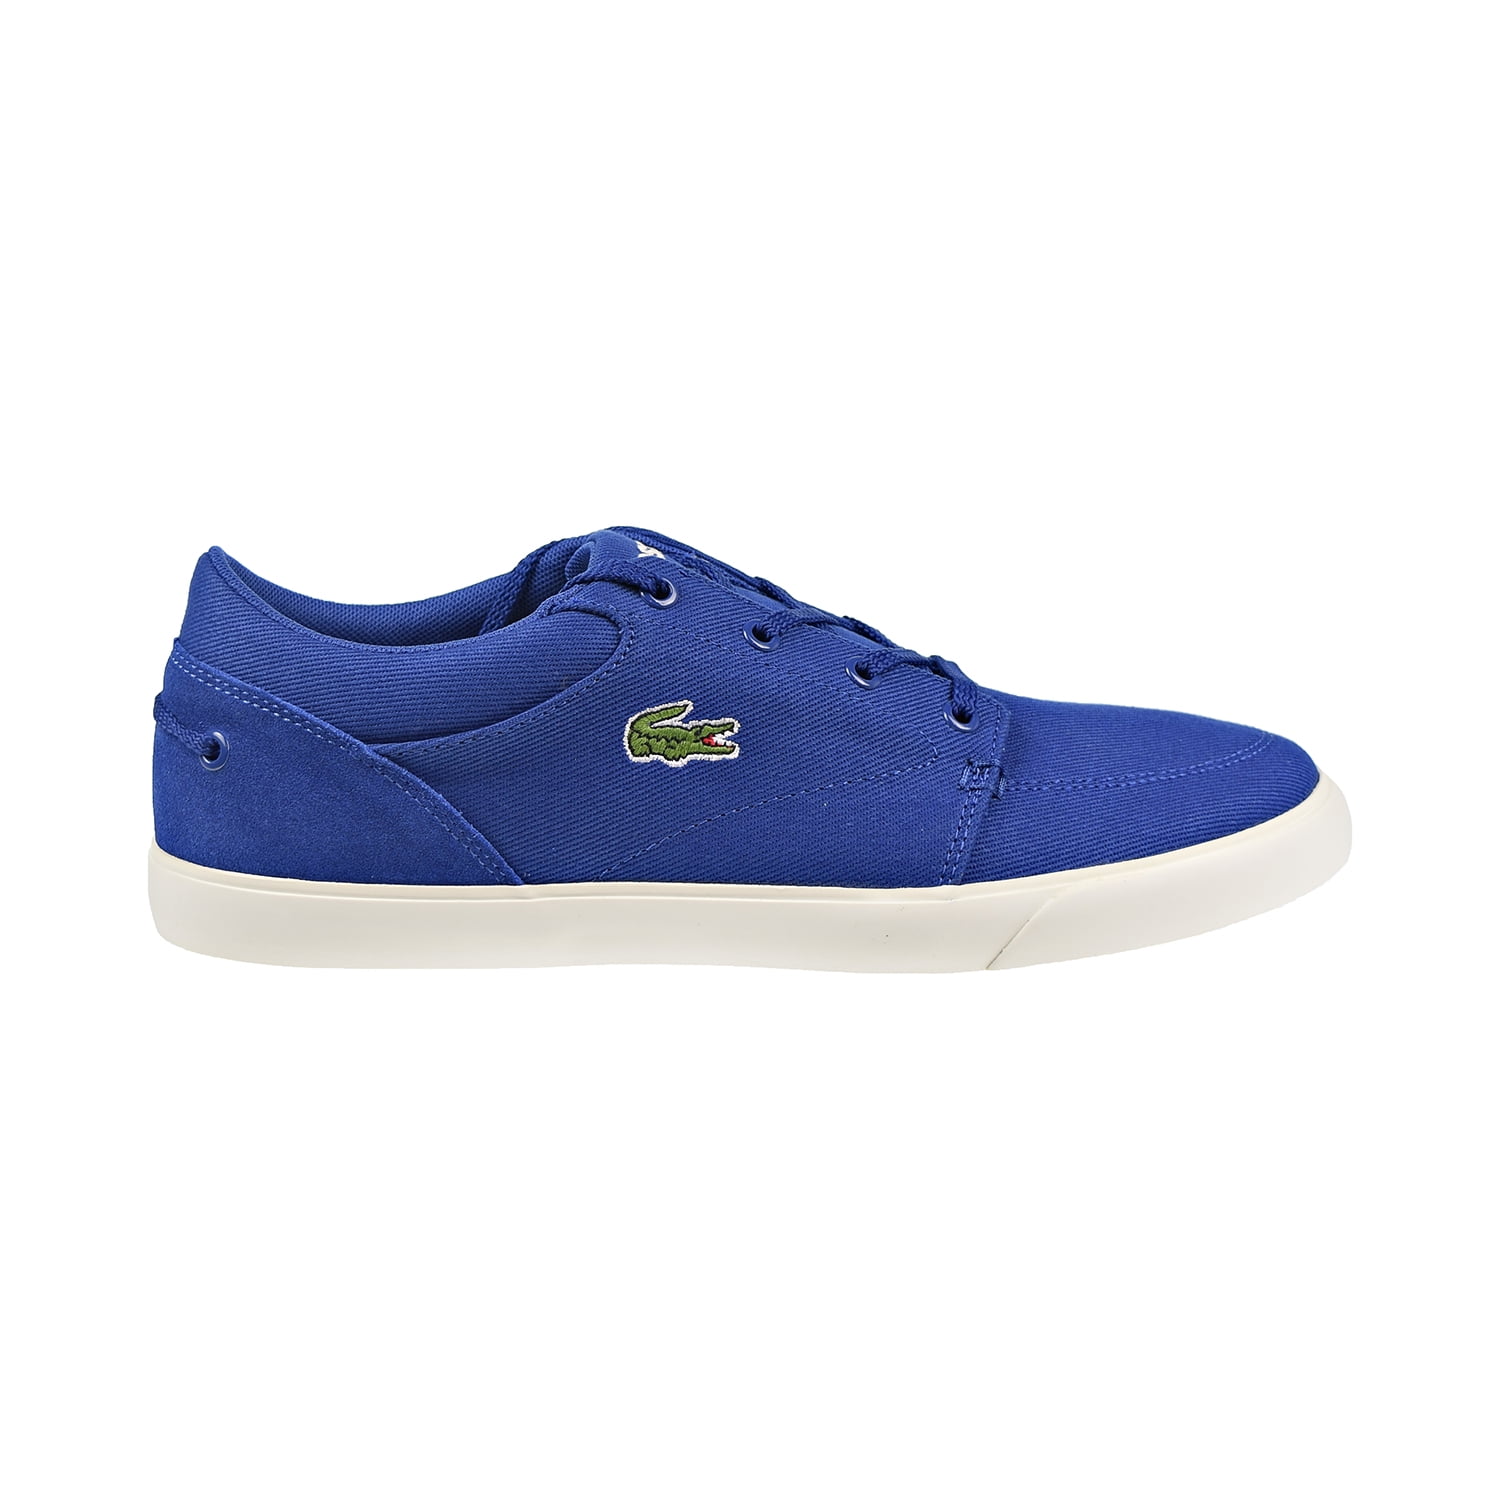 Lacoste Bayliss 219 1 CMA Men's Shoes Dark Blue/Off White 7-37cma0006 ...